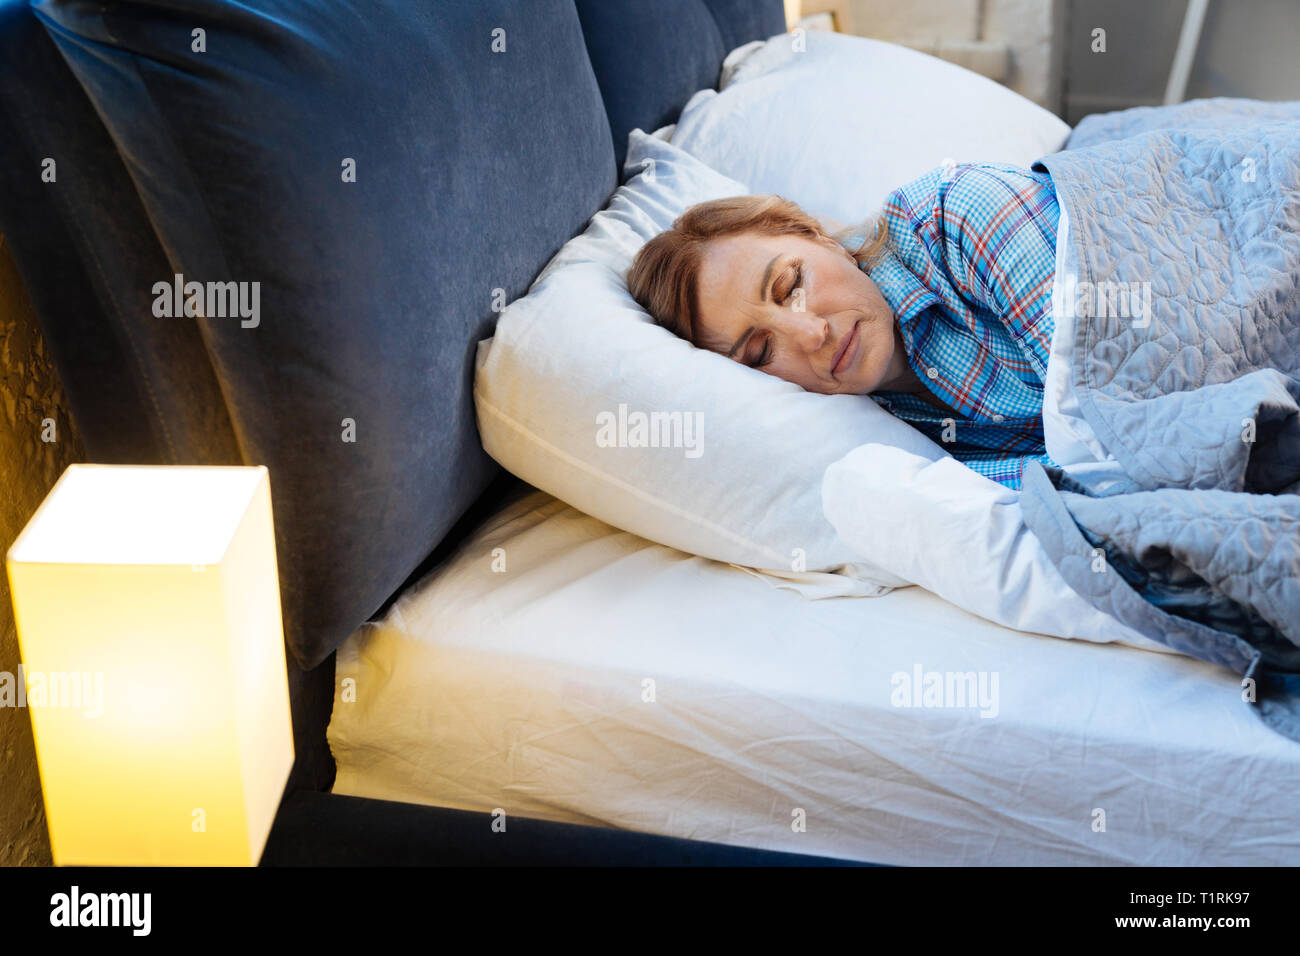 Nach Licht - behaarte Frau liegt mit geschlossenen Augen mit warmen Decke abgedeckt Stockfoto